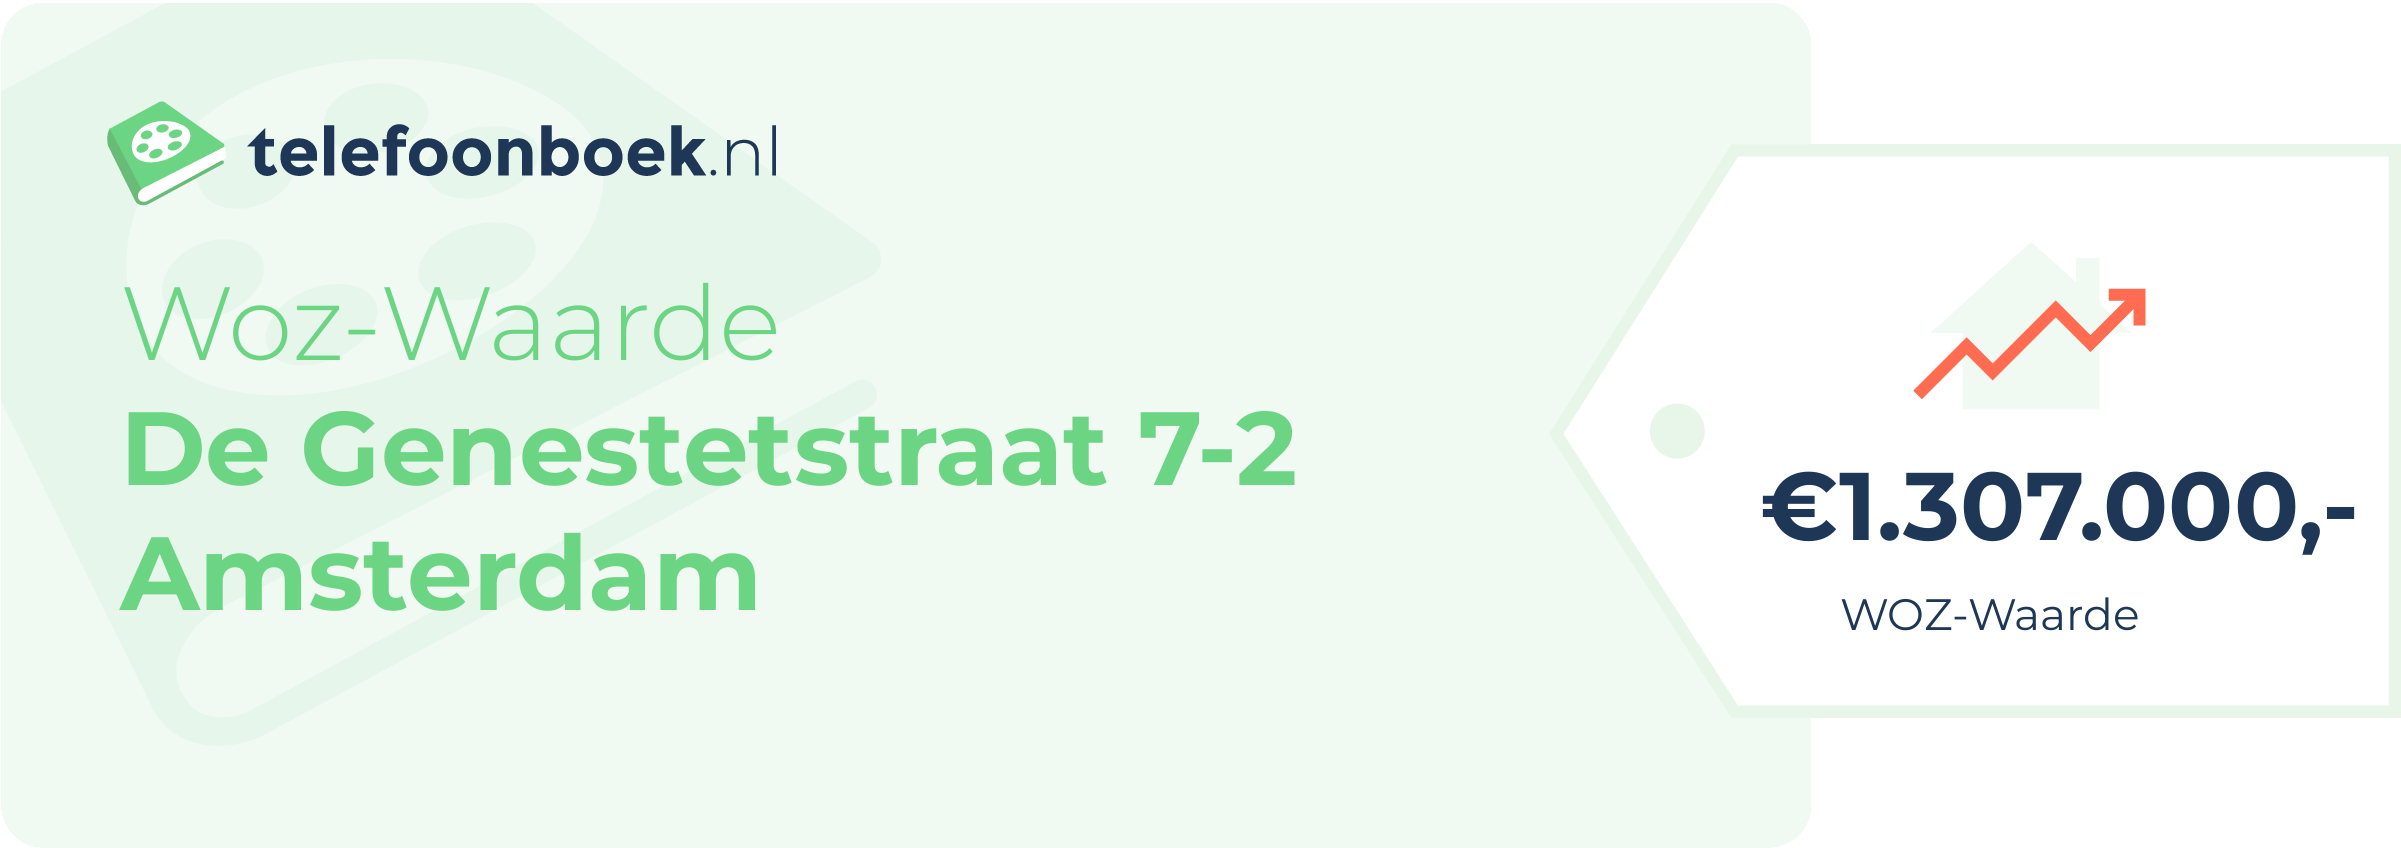 WOZ-waarde De Genestetstraat 7-2 Amsterdam